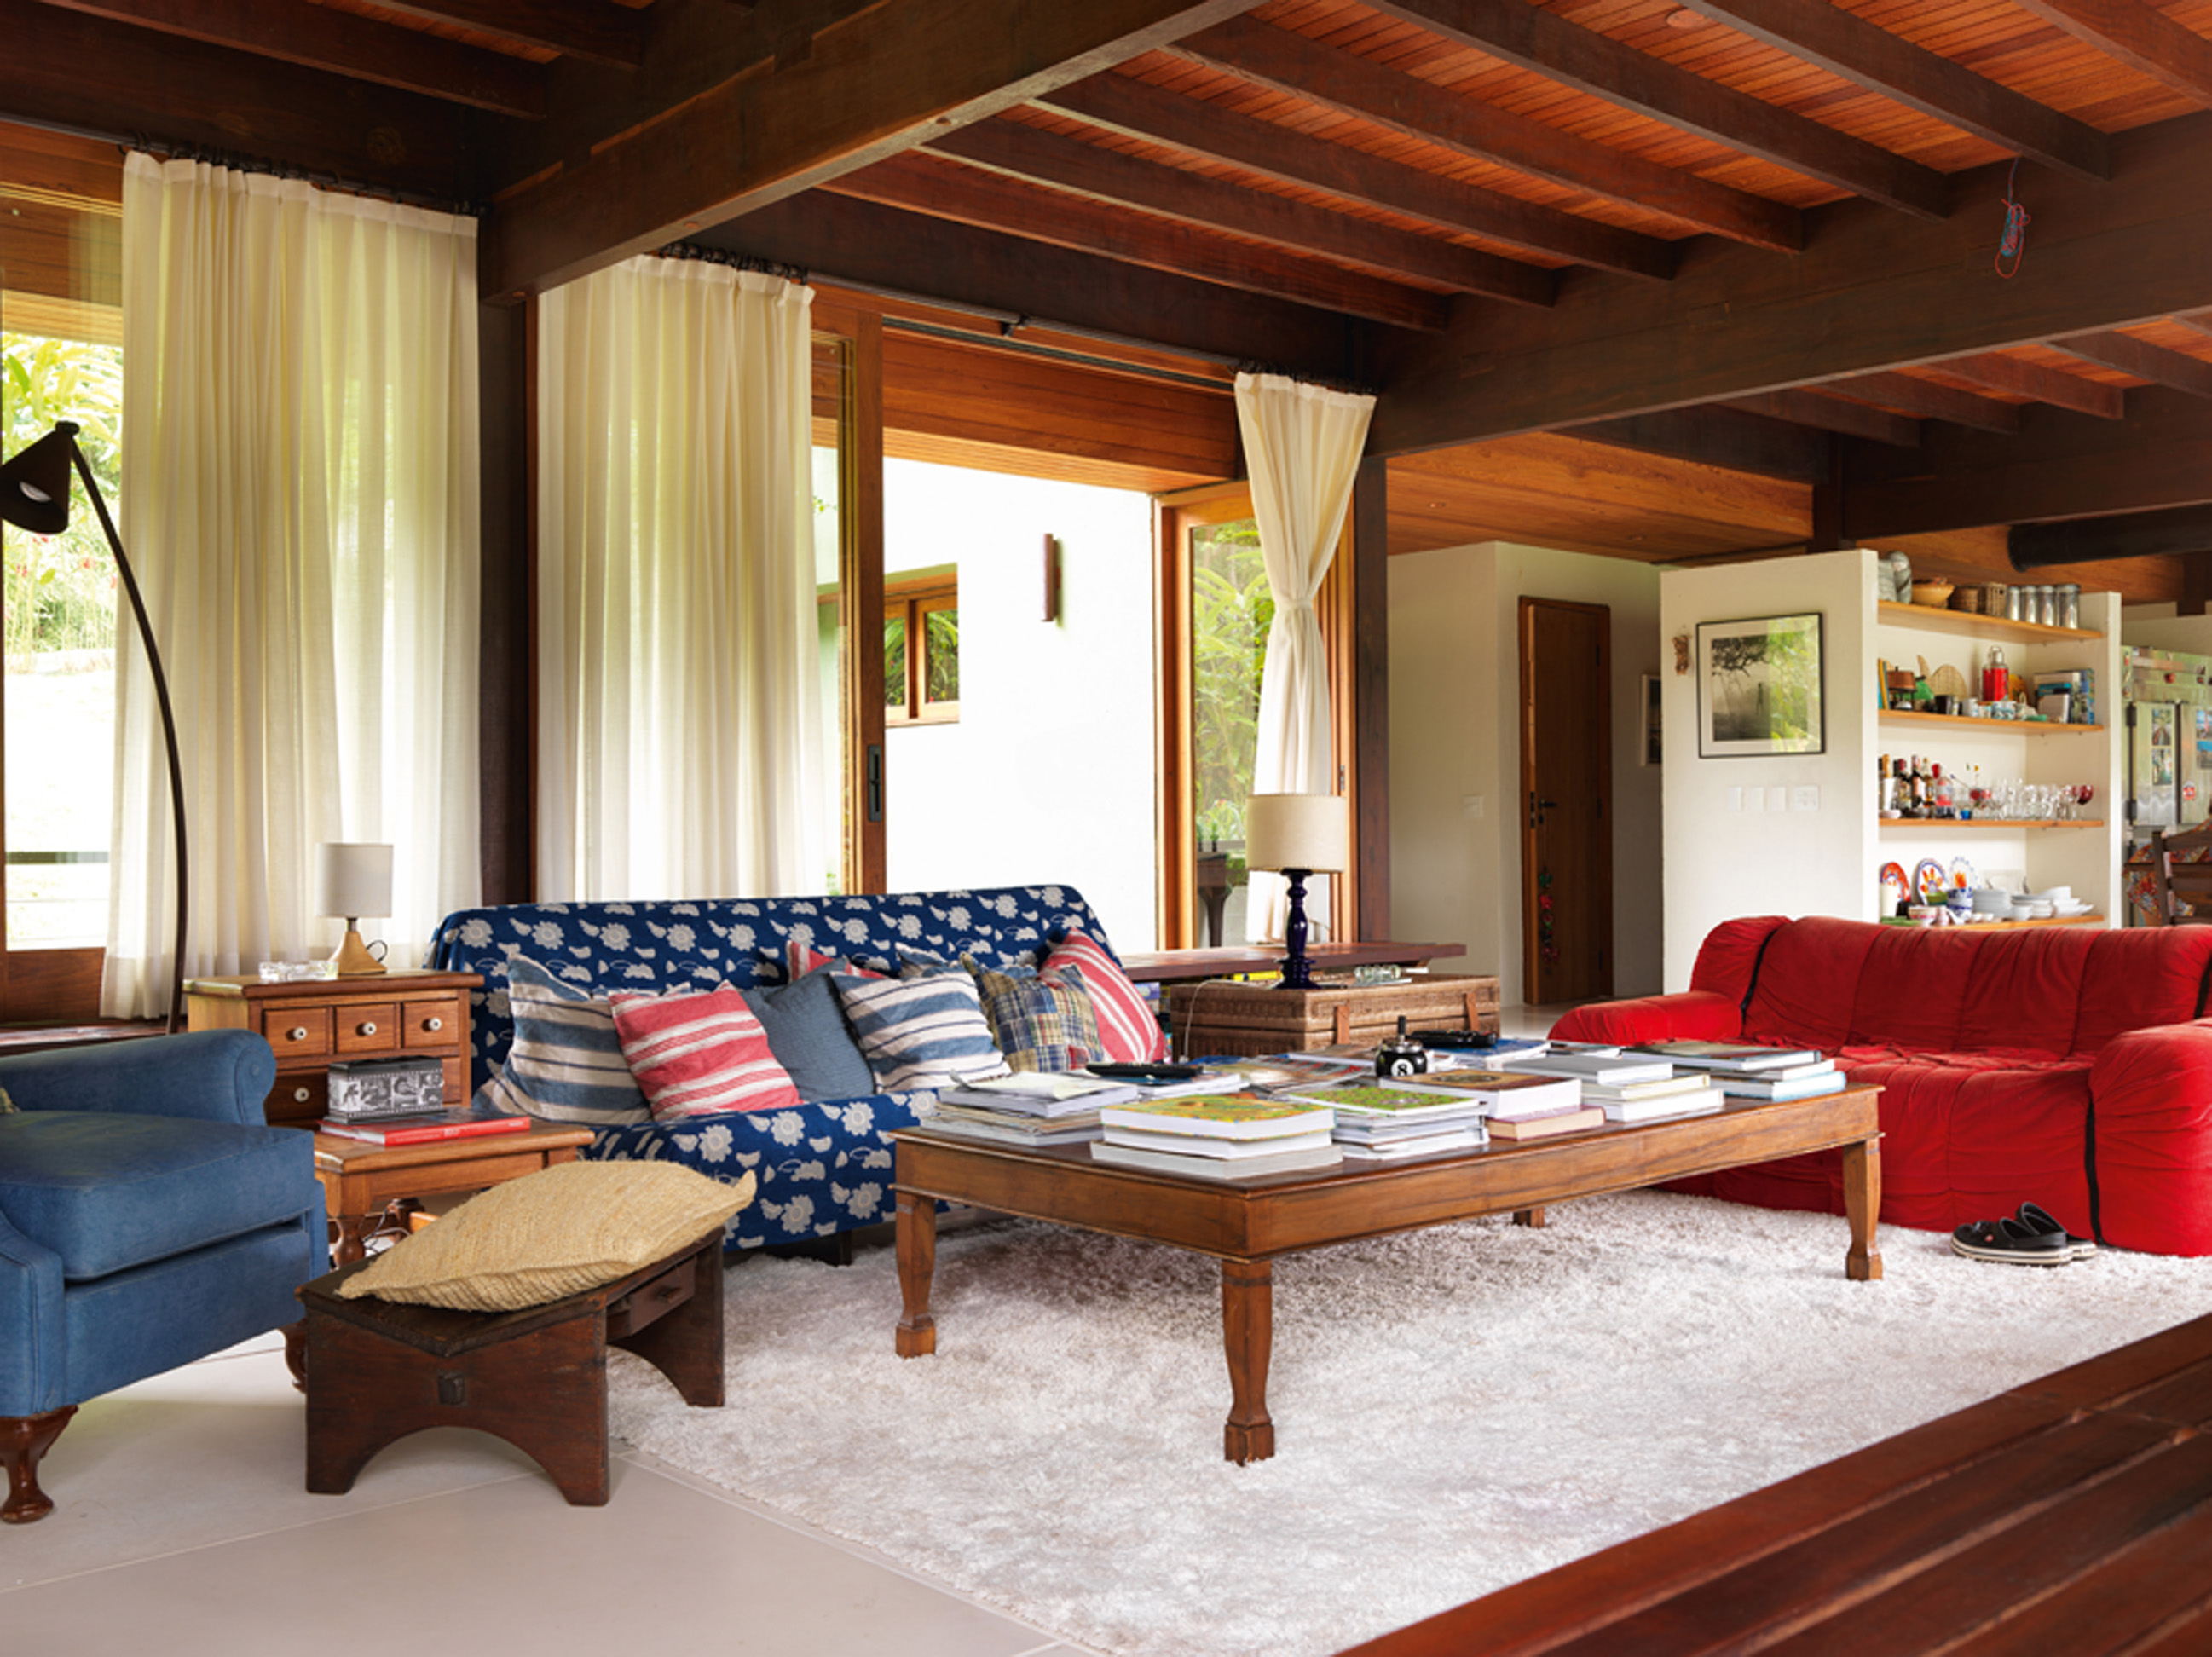 Senta lá: Outra perspectiva da ampla sala. O sofá vermelho é da Forma e o sofá coberto com o tecido é da Futon Company